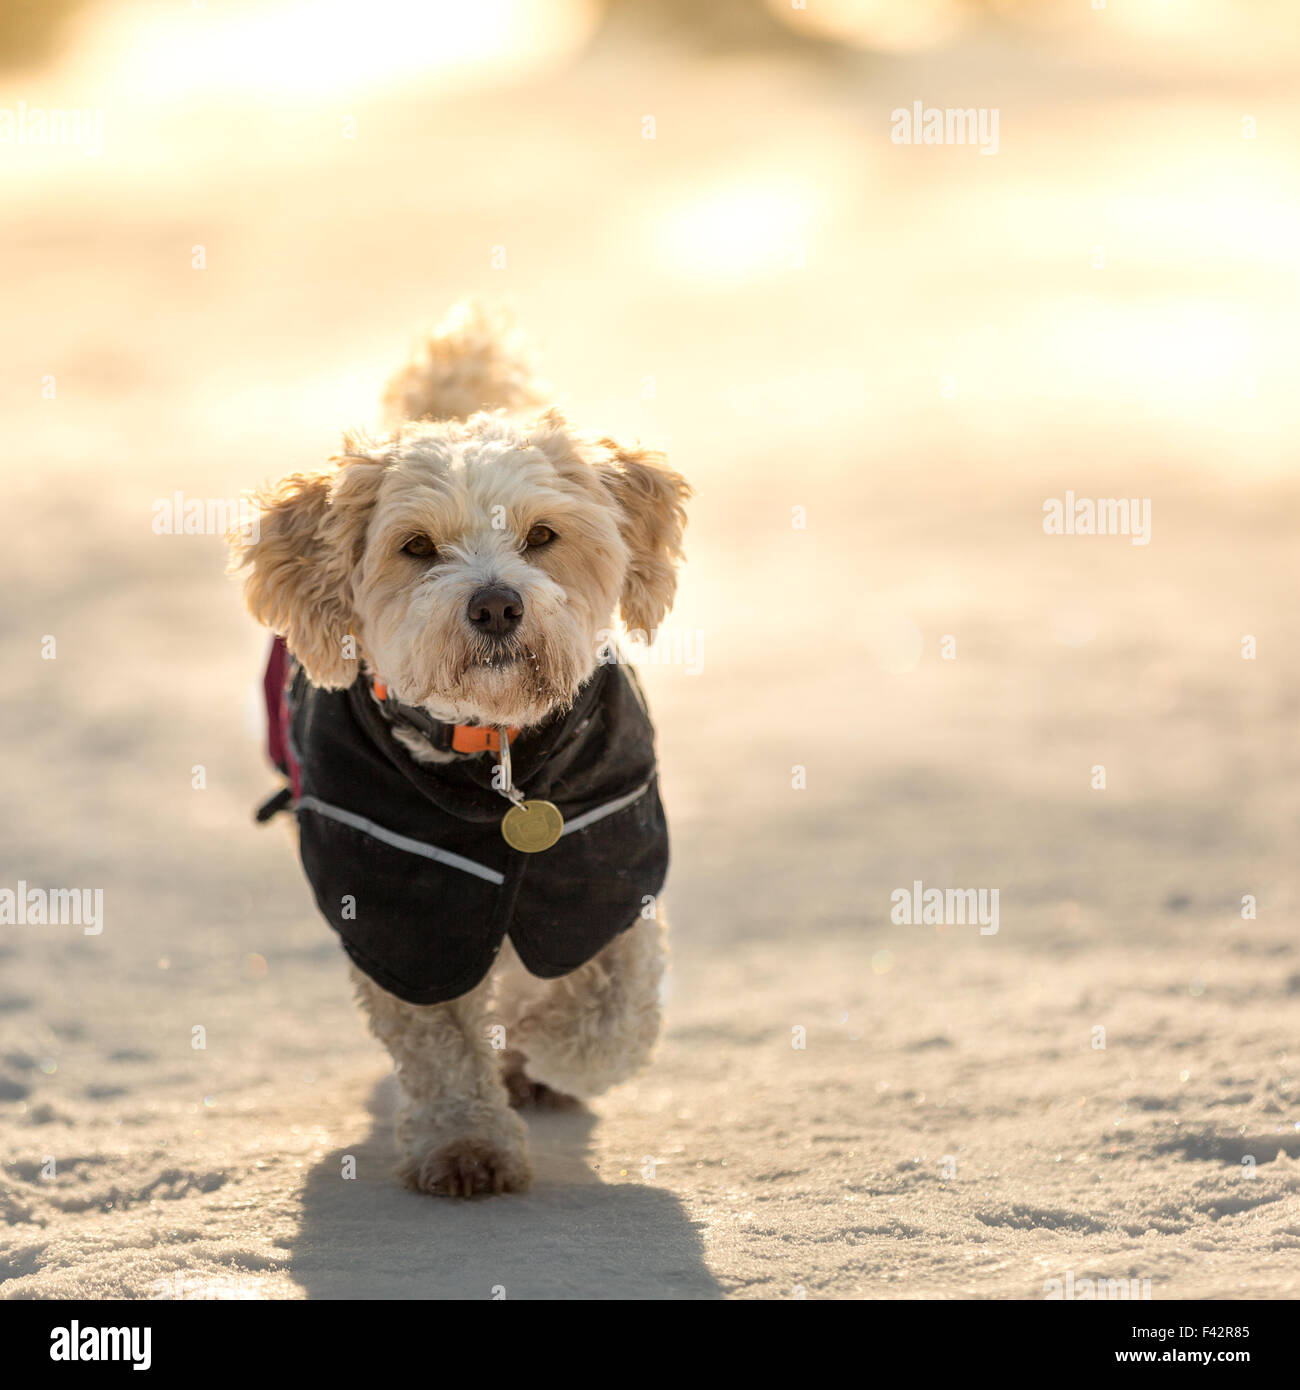 Dog with jacket Stock Photo